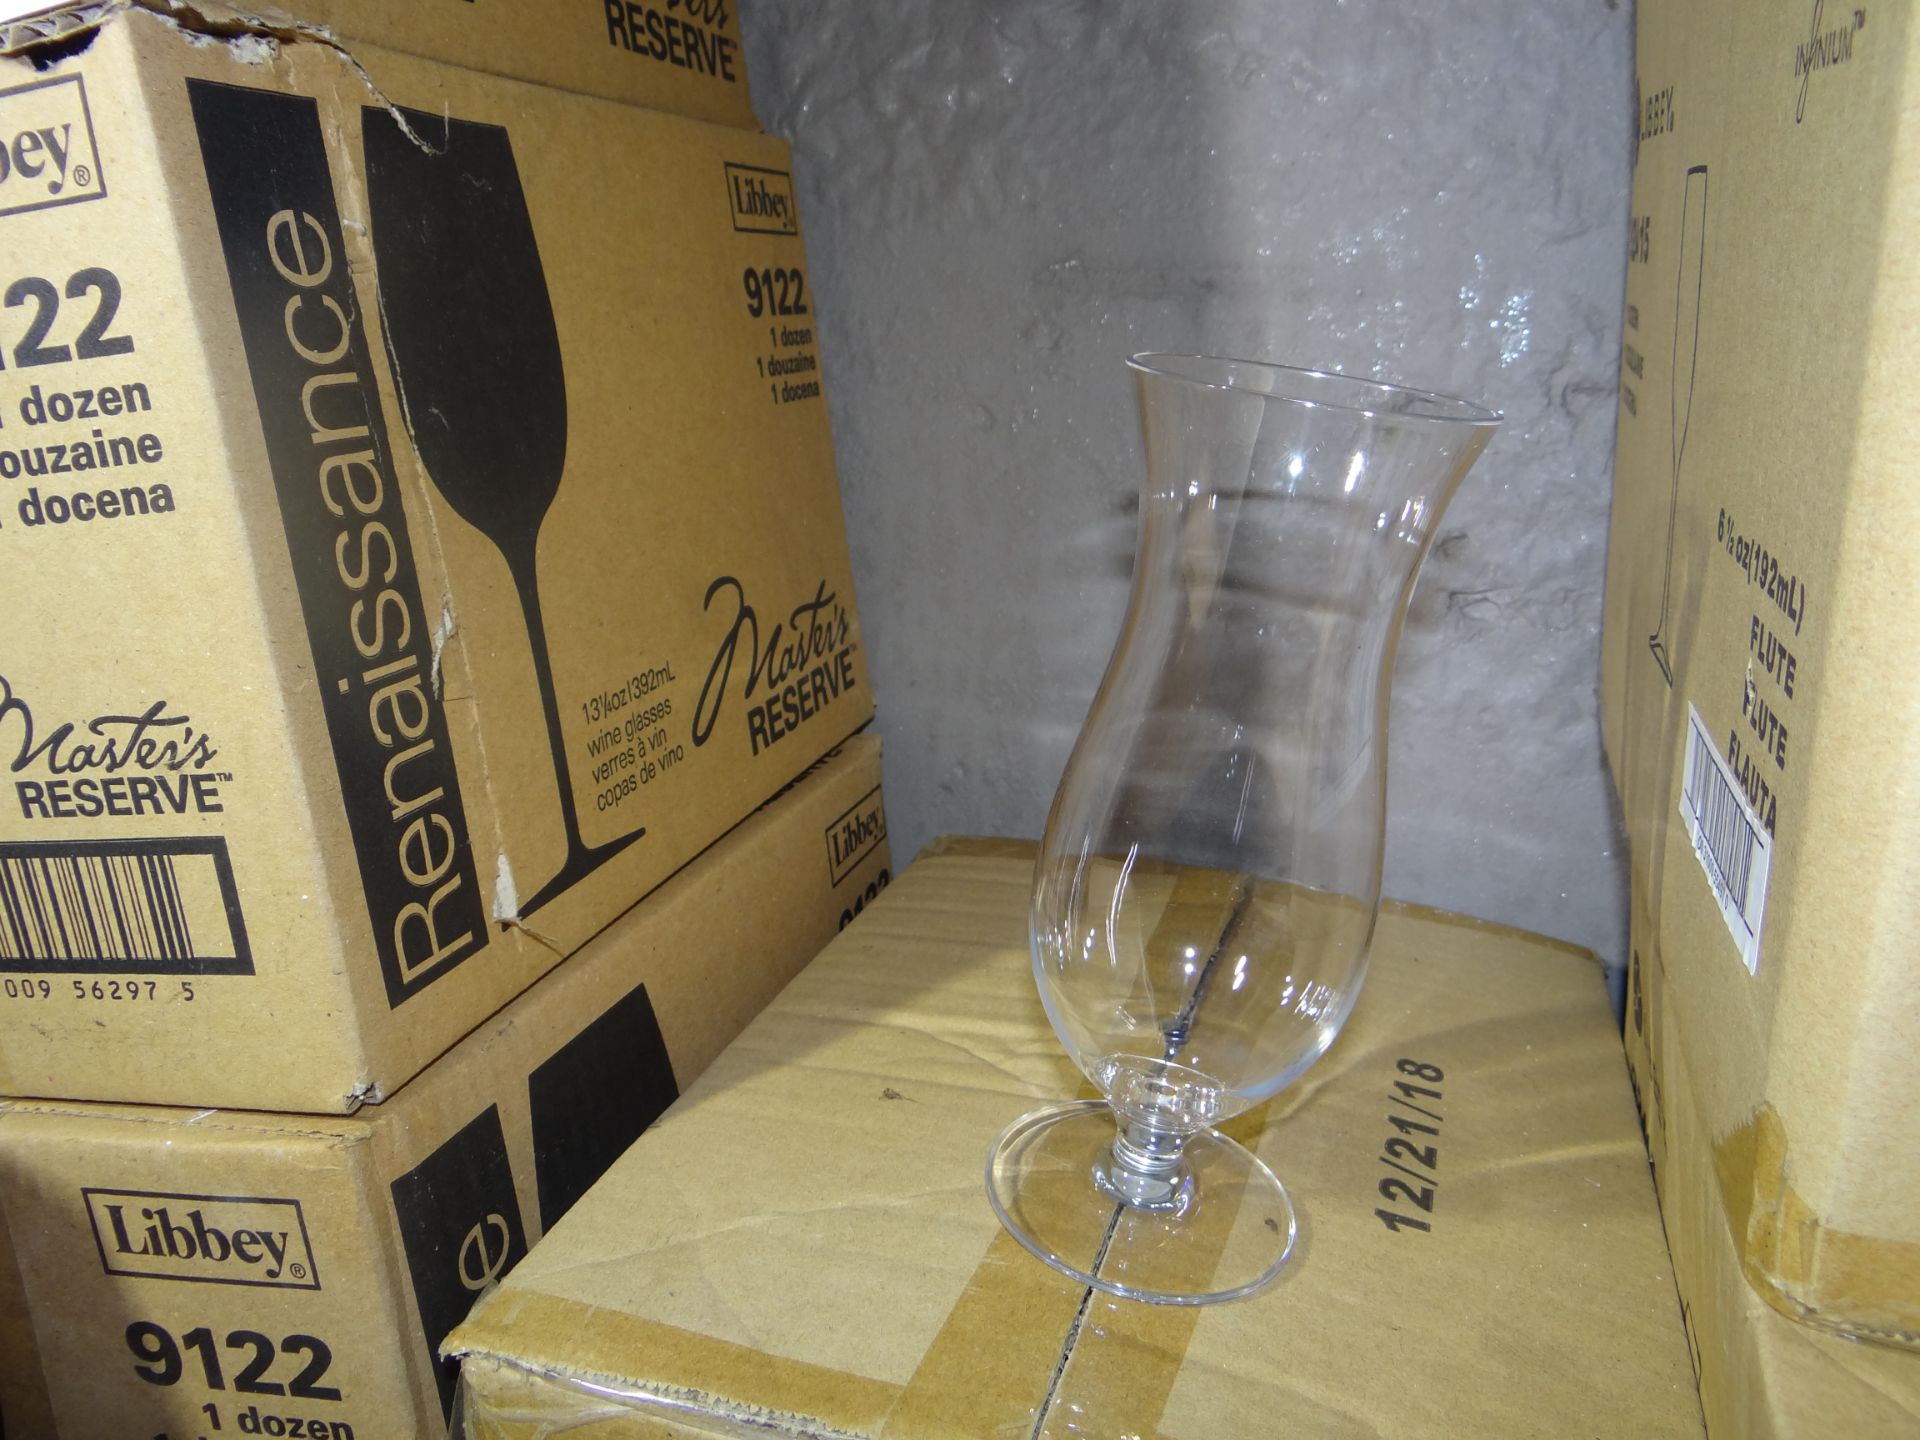 (36) Libbey 92421 16 oz. Plastic Hurricane Glass. 3 Cases, 12 Per Case. New In Box.